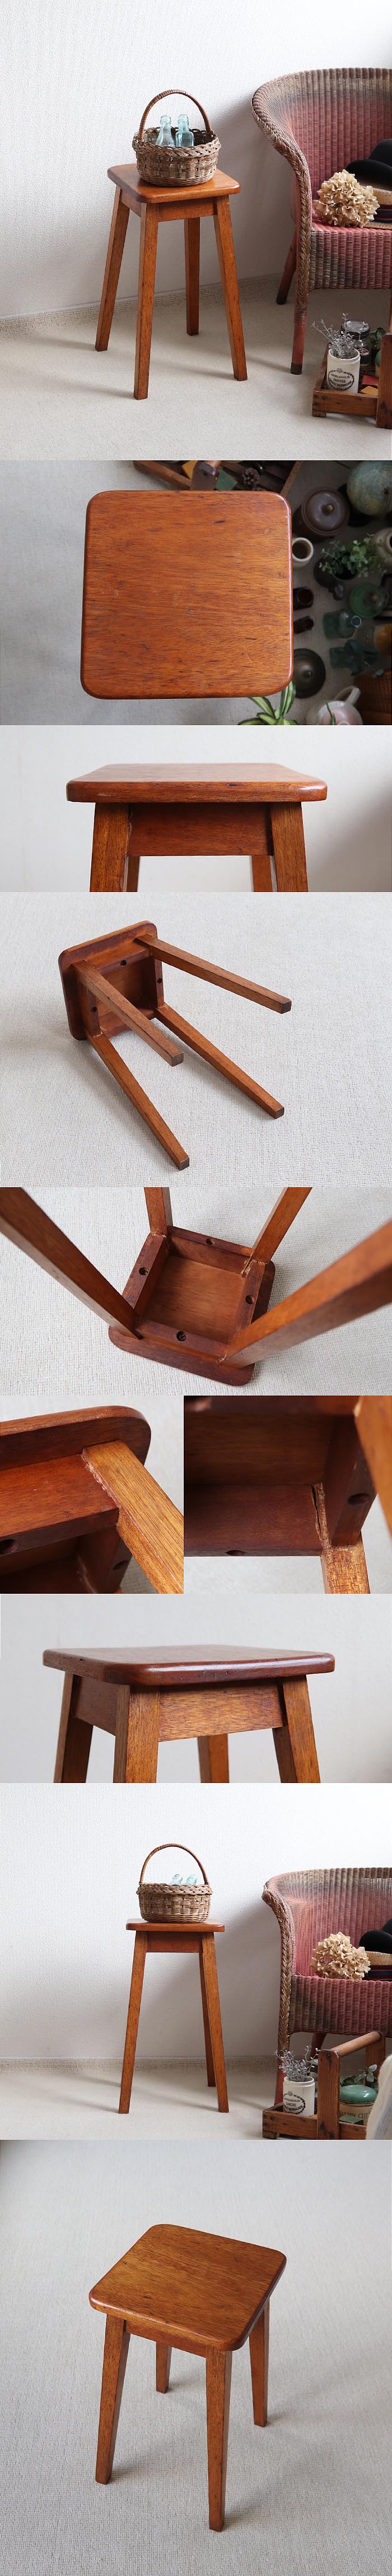 イギリス アンティーク スツール 木製椅子 飾り台 花台 インテリア 家具「シンプルデザイン」T-875